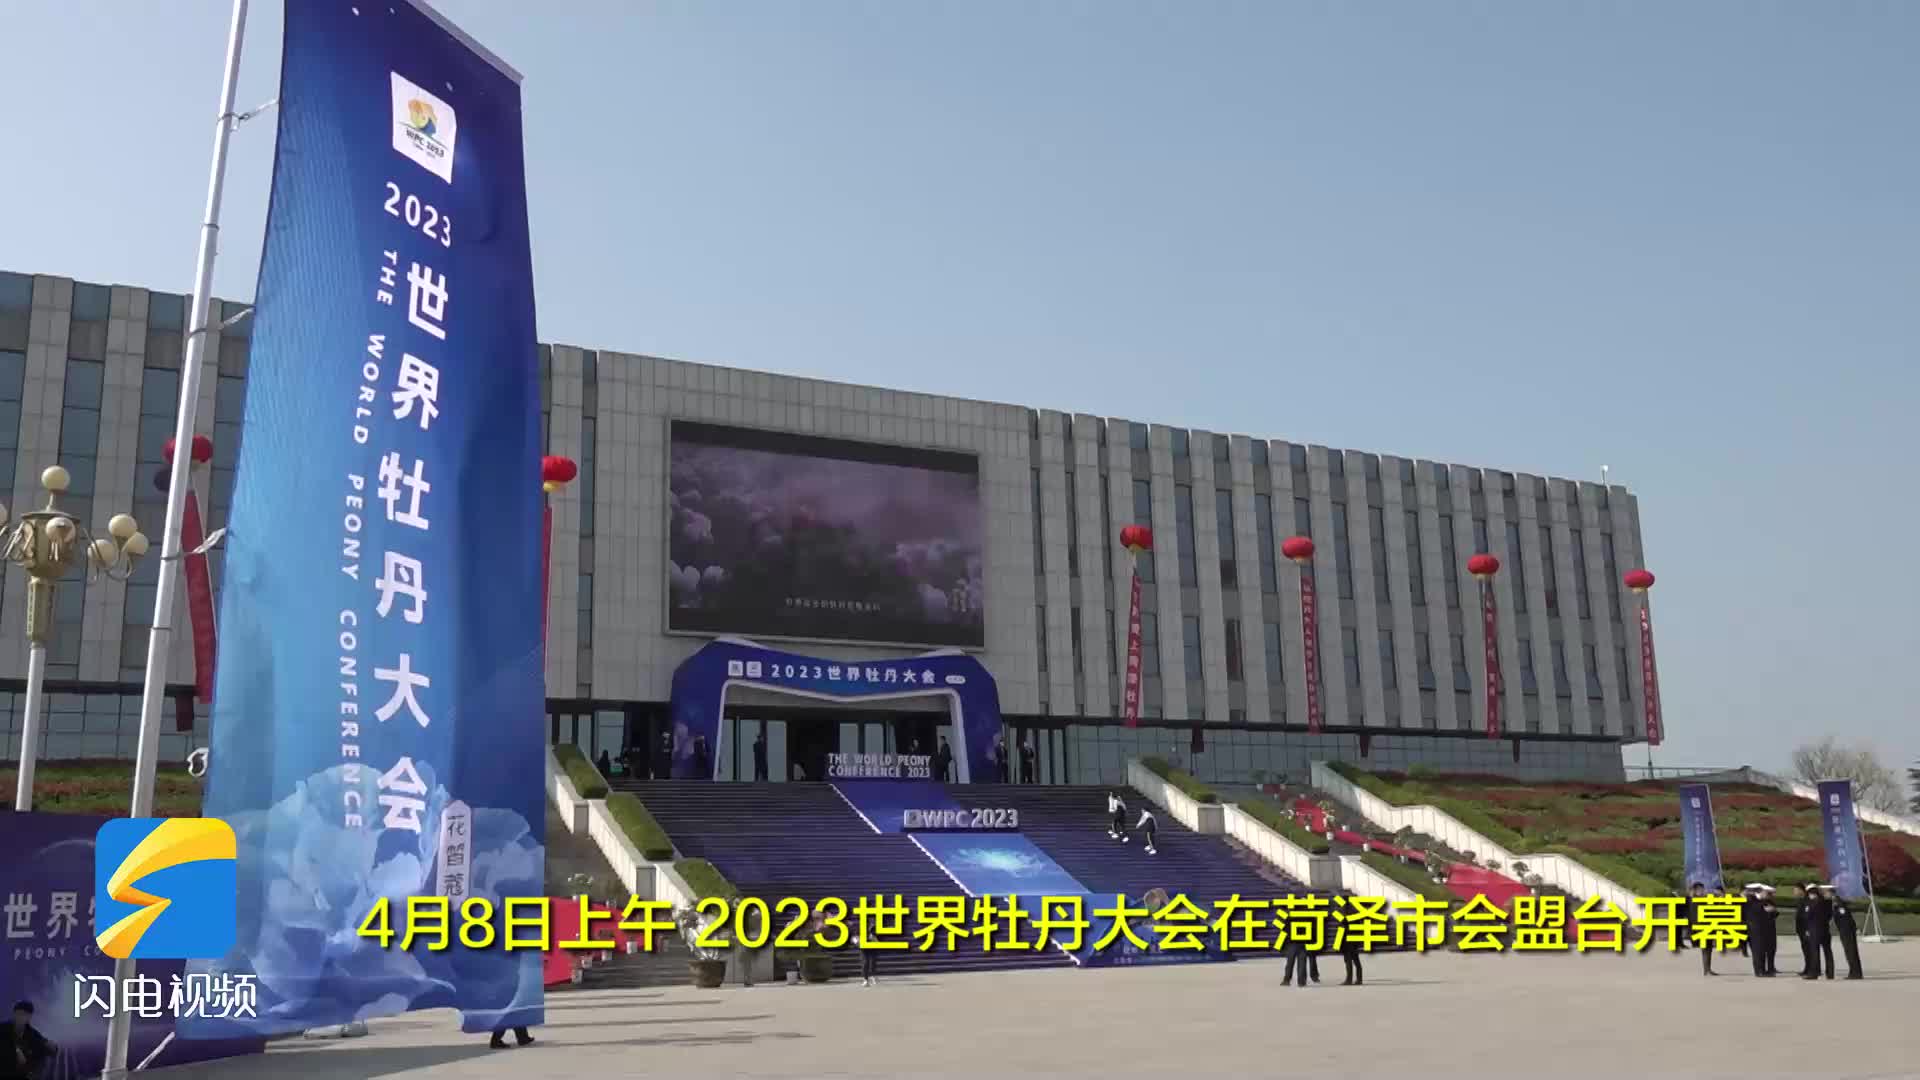 以花为媒广交朋友 2023世界牡丹大会在菏泽举办